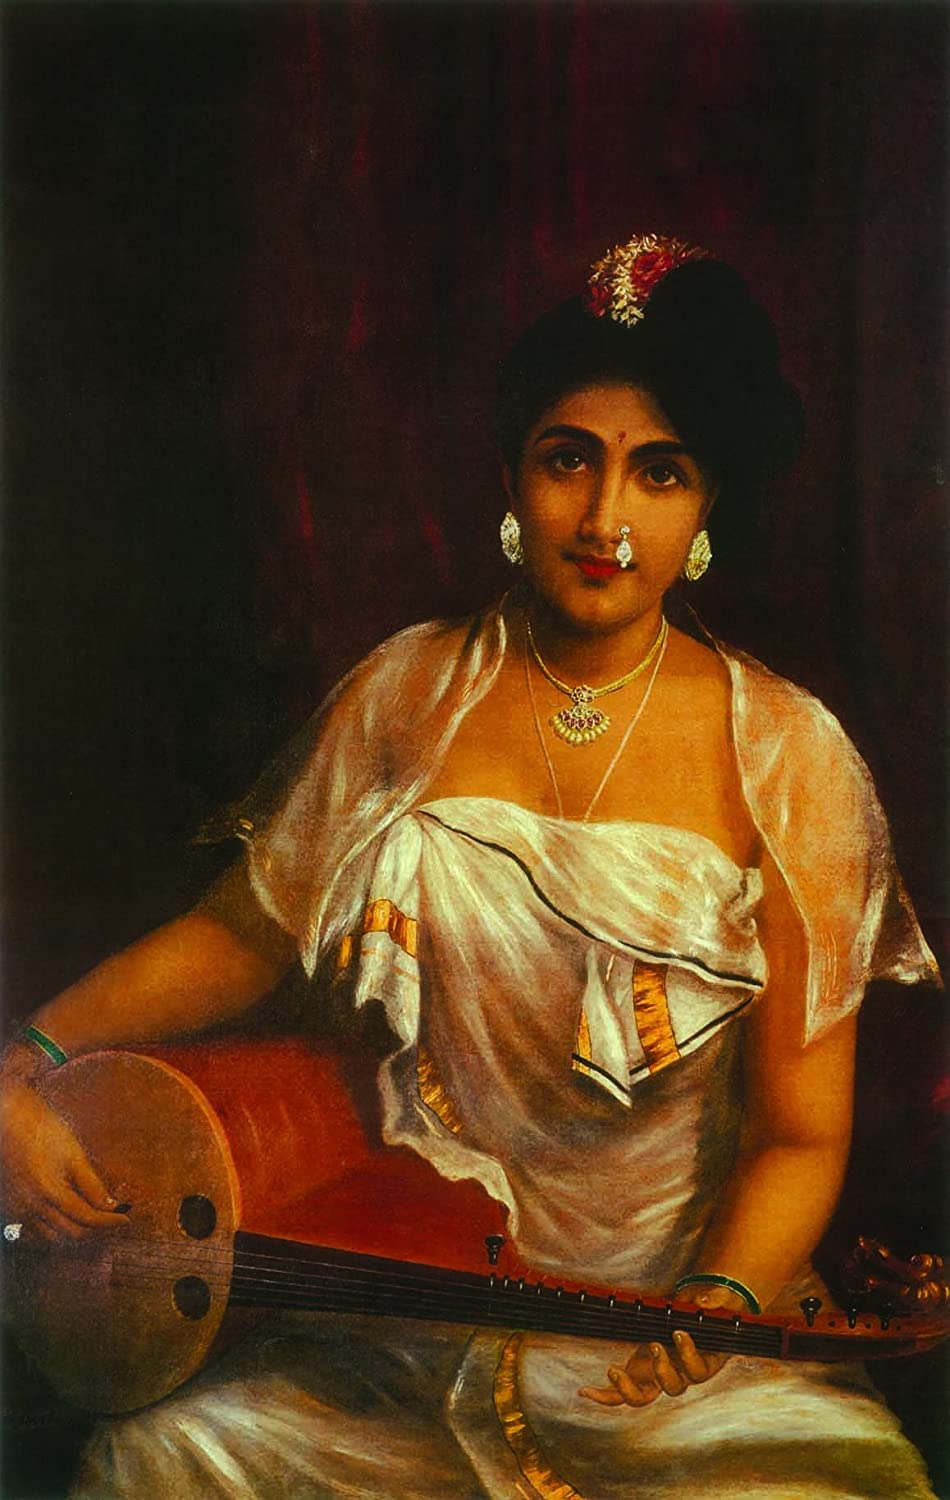 Raja Ravi Verma Paintings of Young Women